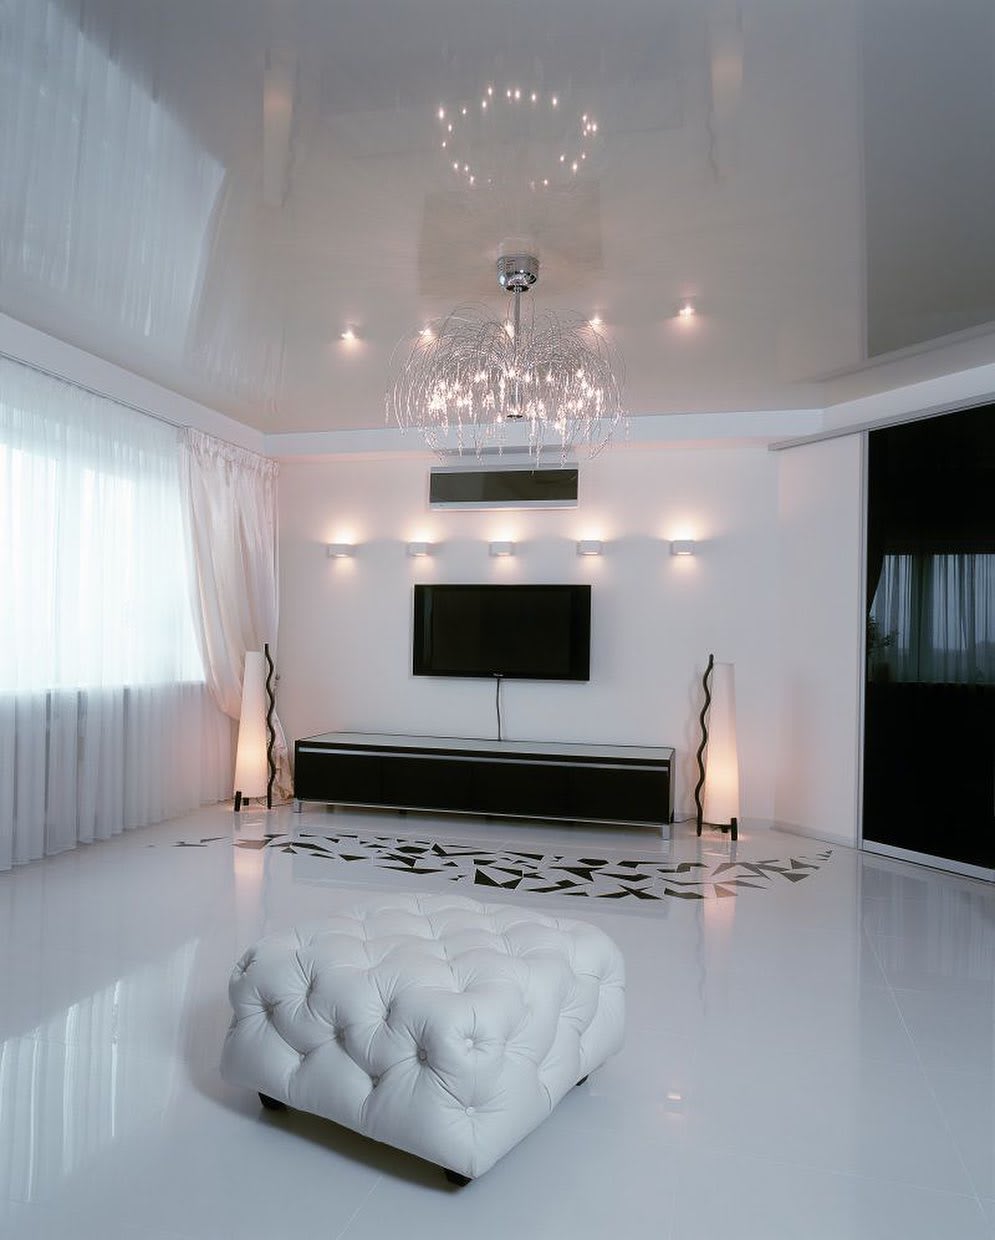 Images Luxury Ceilings